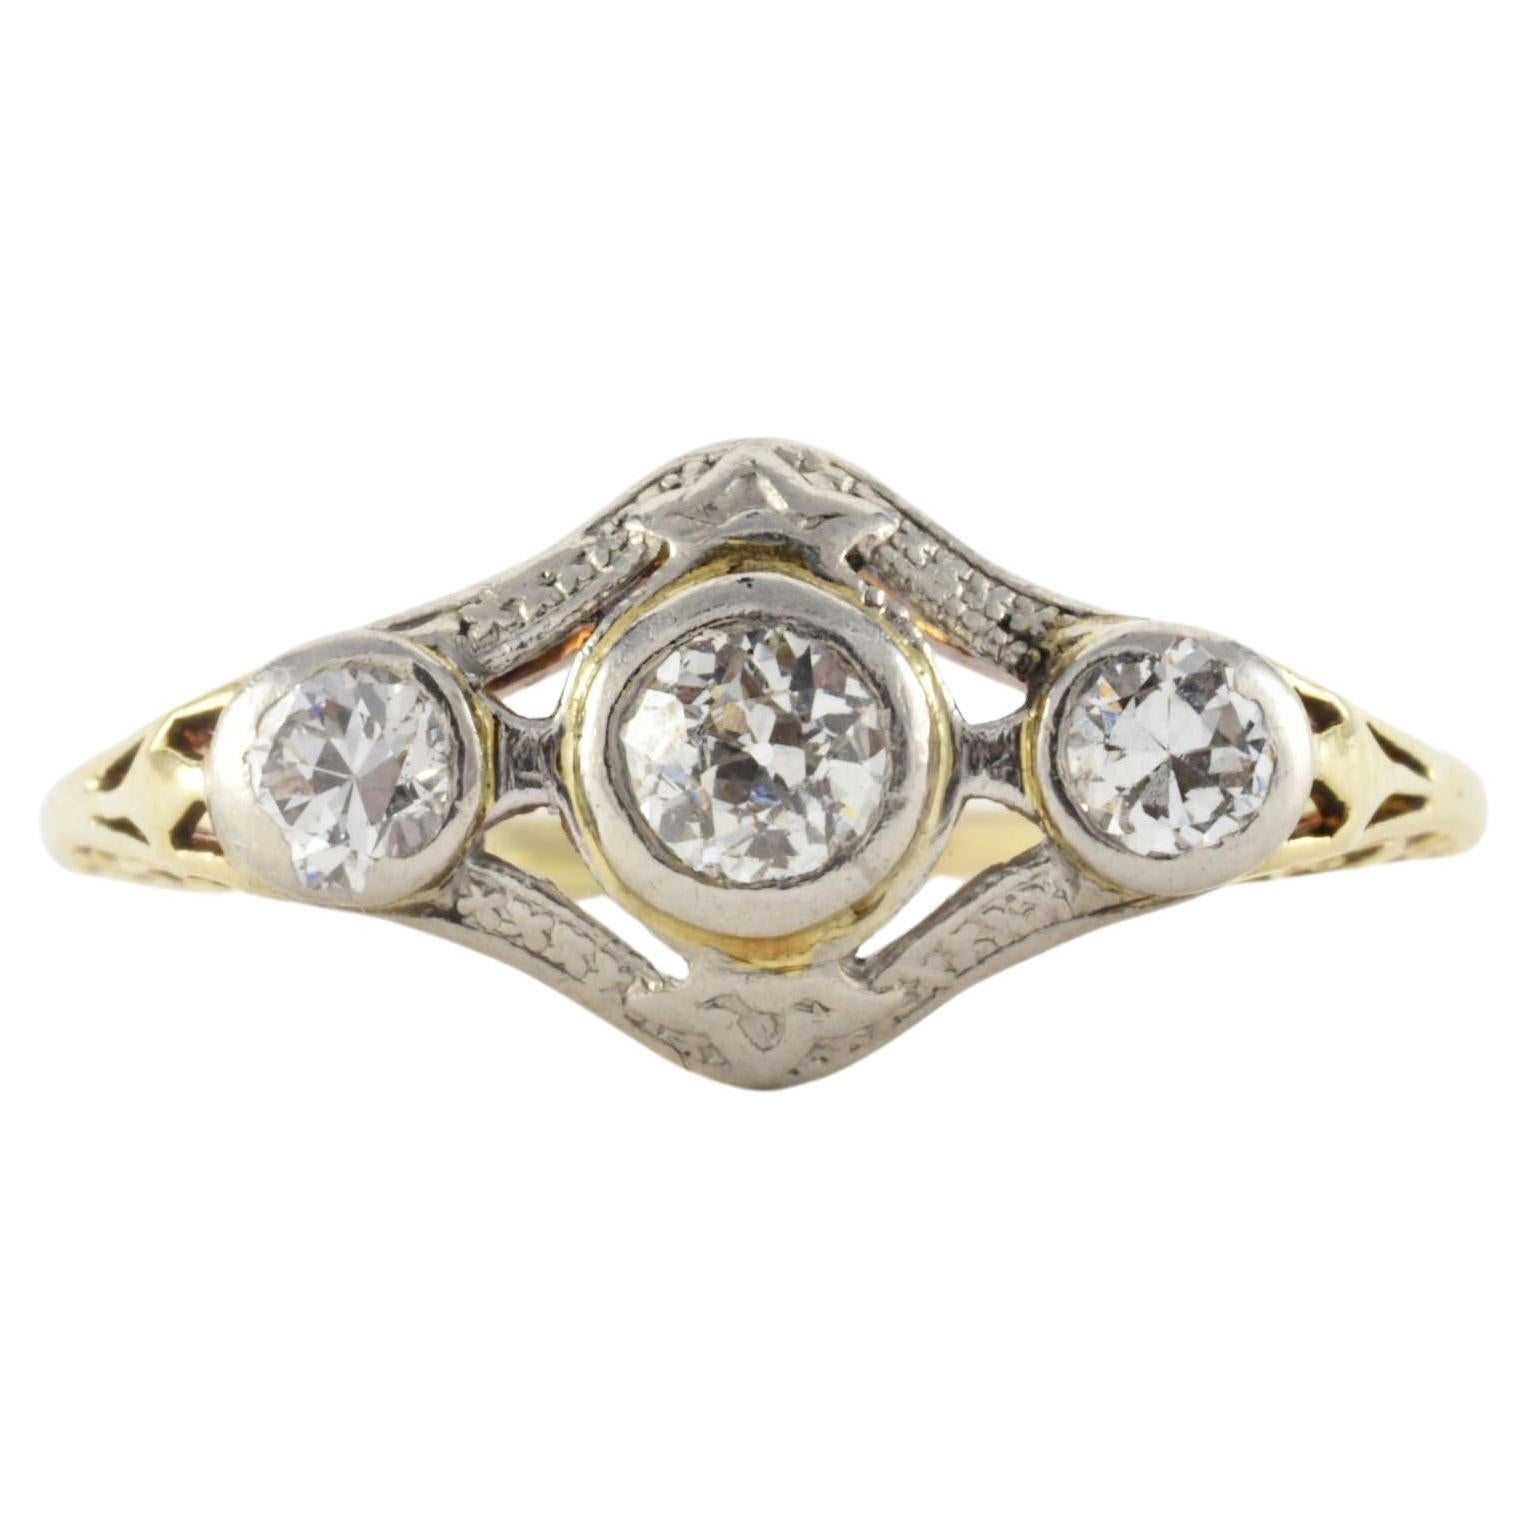 Edwardian Era Three Stone Diamond Ring